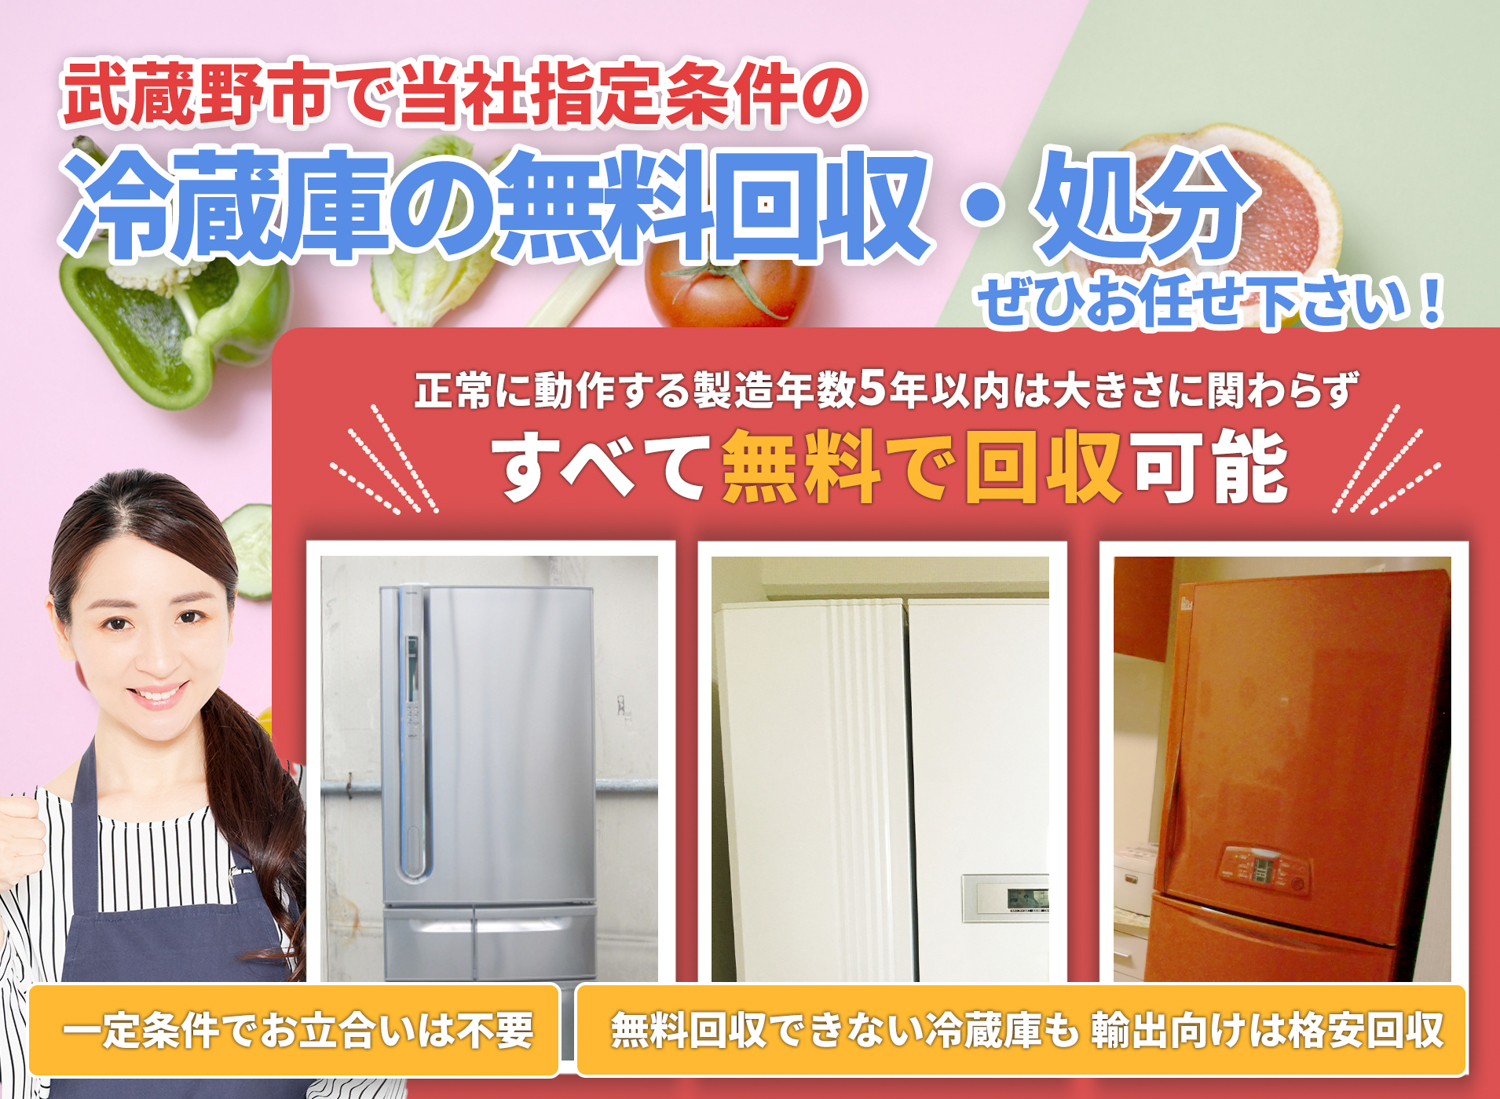 武蔵野市で「安心と丁寧」を両立する冷蔵庫無料回収処分隊の冷蔵庫無料回収サービス